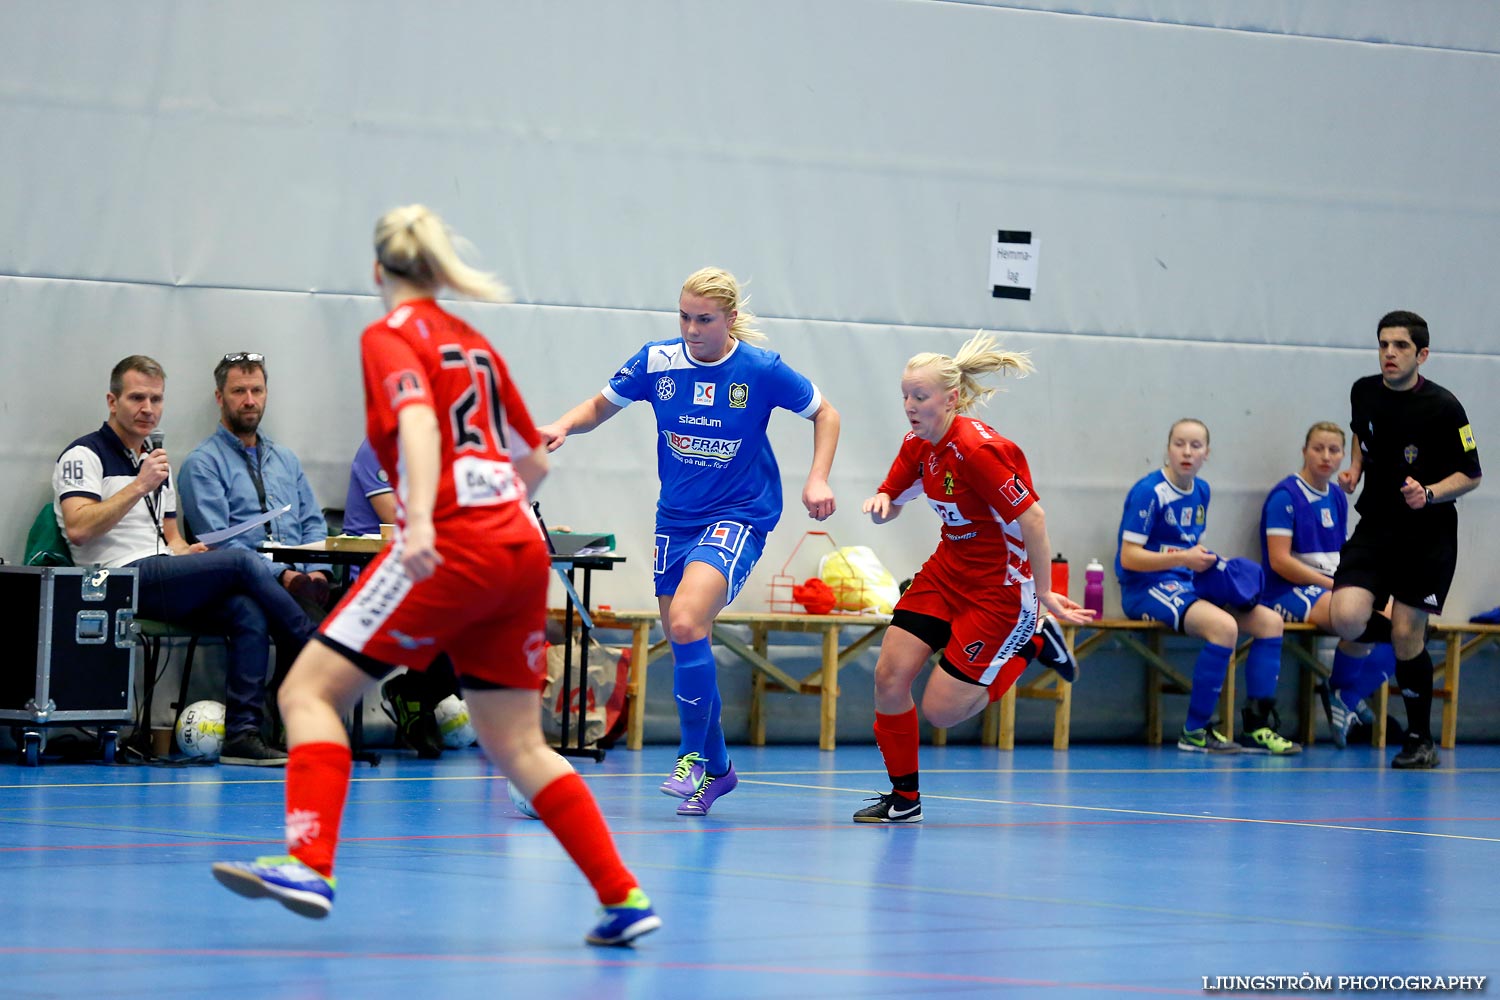 Skövde Futsalcup Damer QBIK-Töreboda IK,dam,Arena Skövde,Skövde,Sverige,Skövde Futsalcup 2013,Futsal,2013,98412